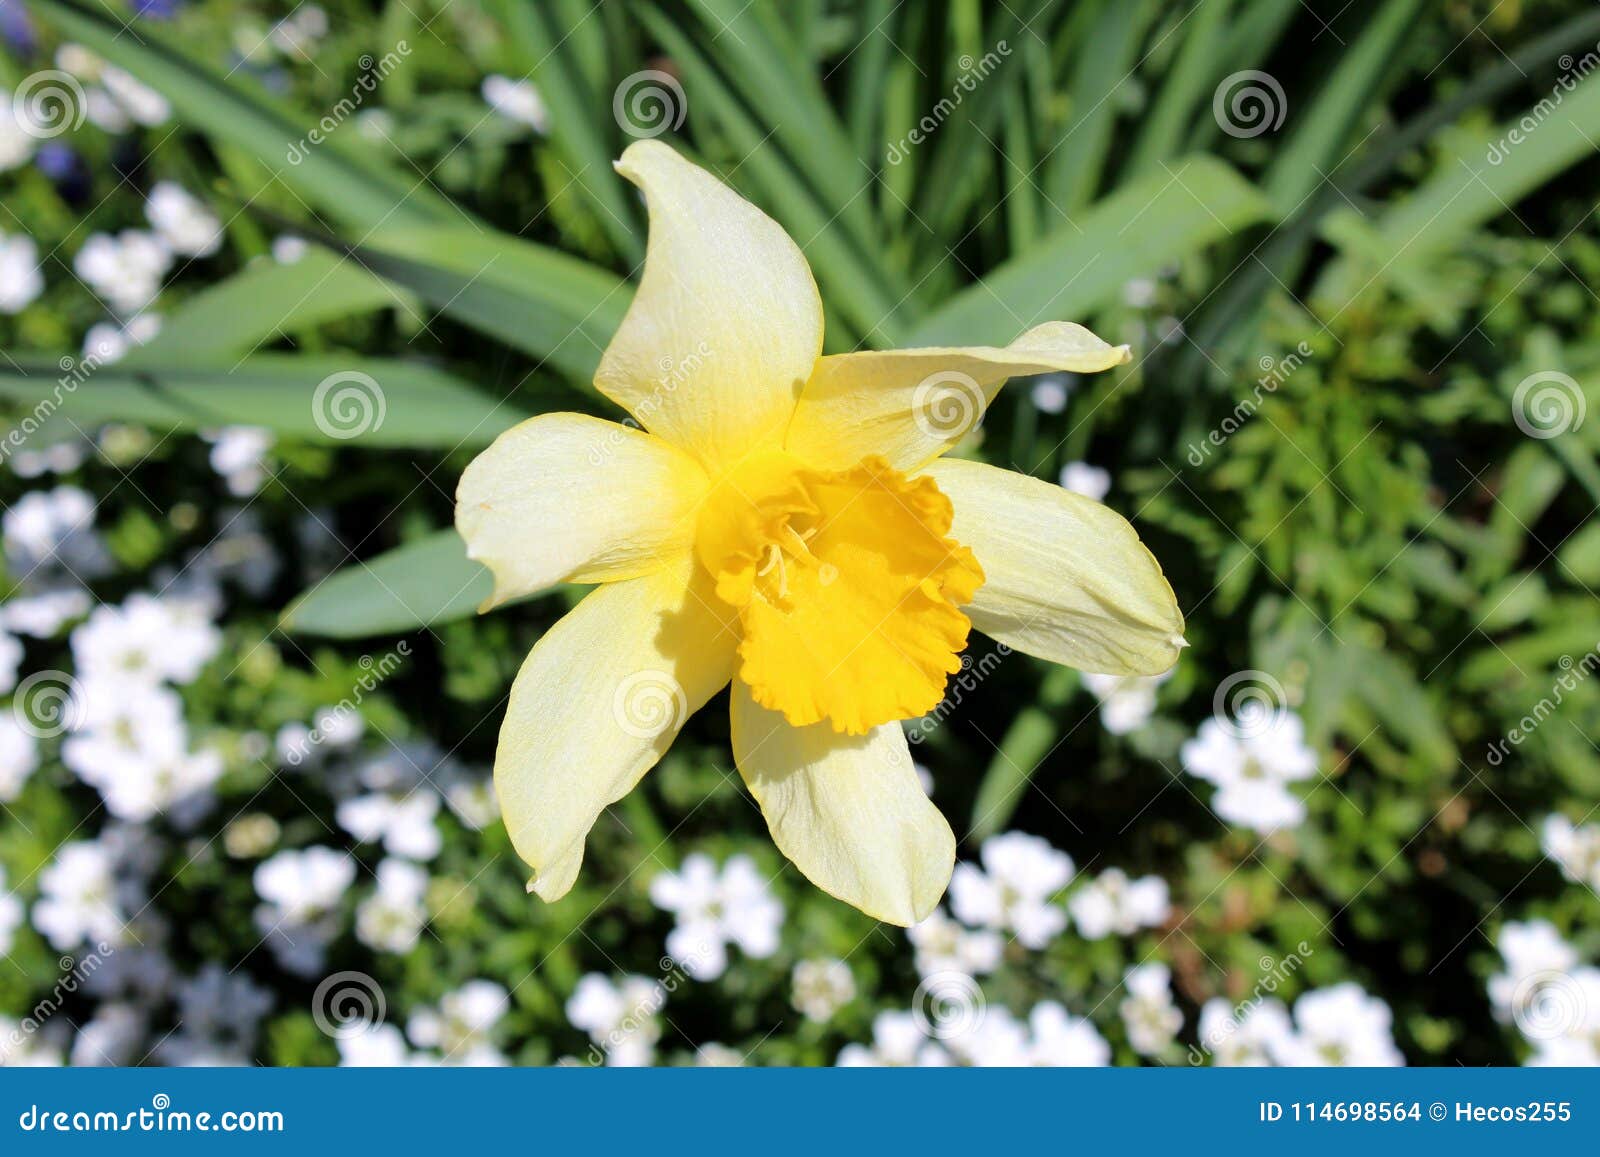 Fleur Jaune De Jonquille Ou De Narcisse Sur Le Fond De Feuilles De Vert Et  De Fleurs Blanches Photo stock - Image du fleur, petit: 114698564